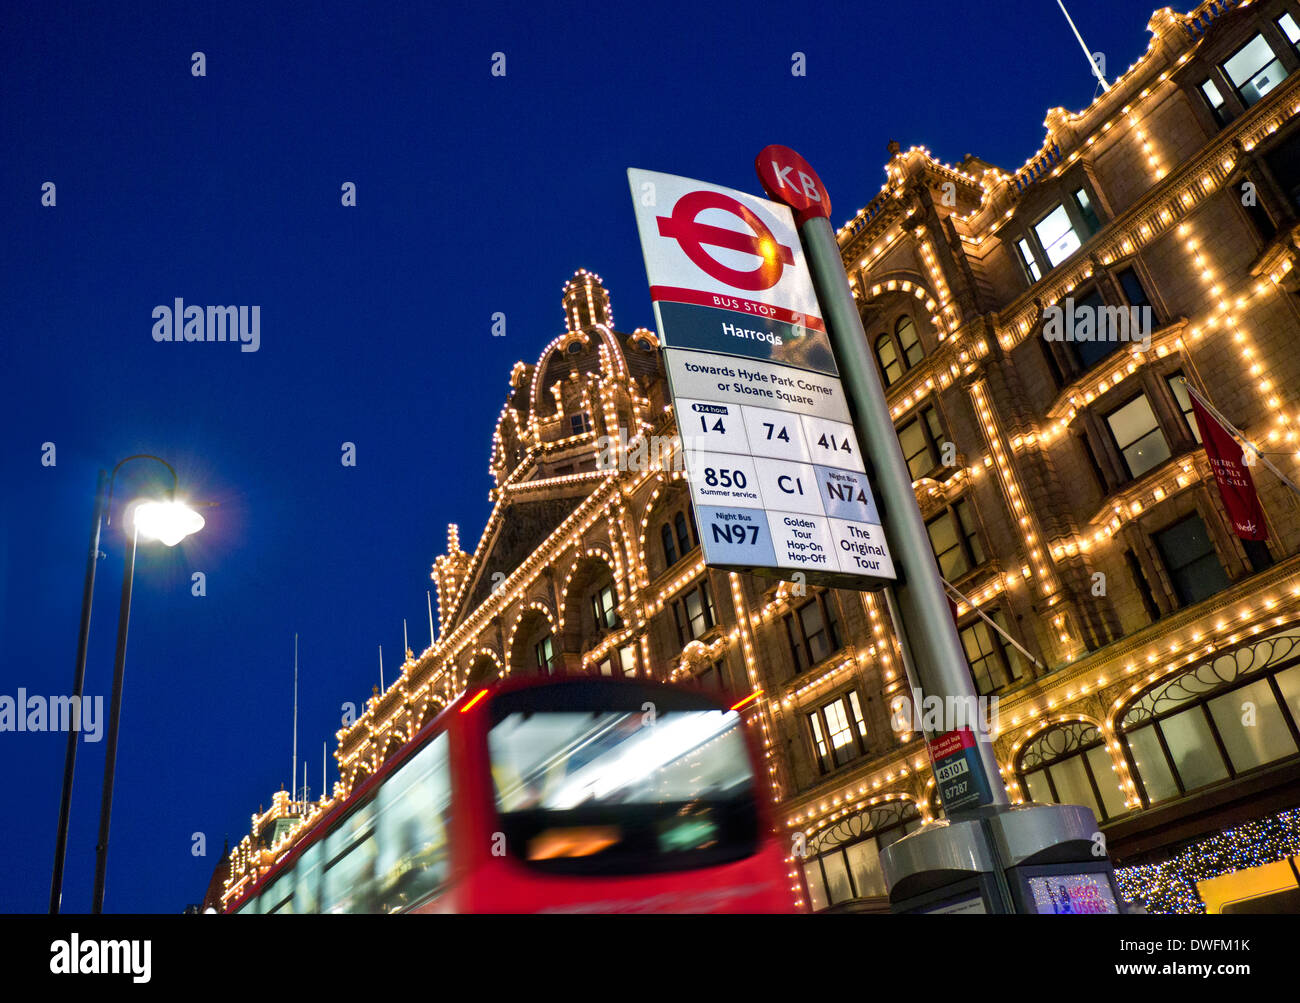 KNIGHTSBRIDGE Harrods department store de bus de nuit avec son propre arrêt de bus et bus rouge brouillée passant Londres Knightsbridge London UK Banque D'Images